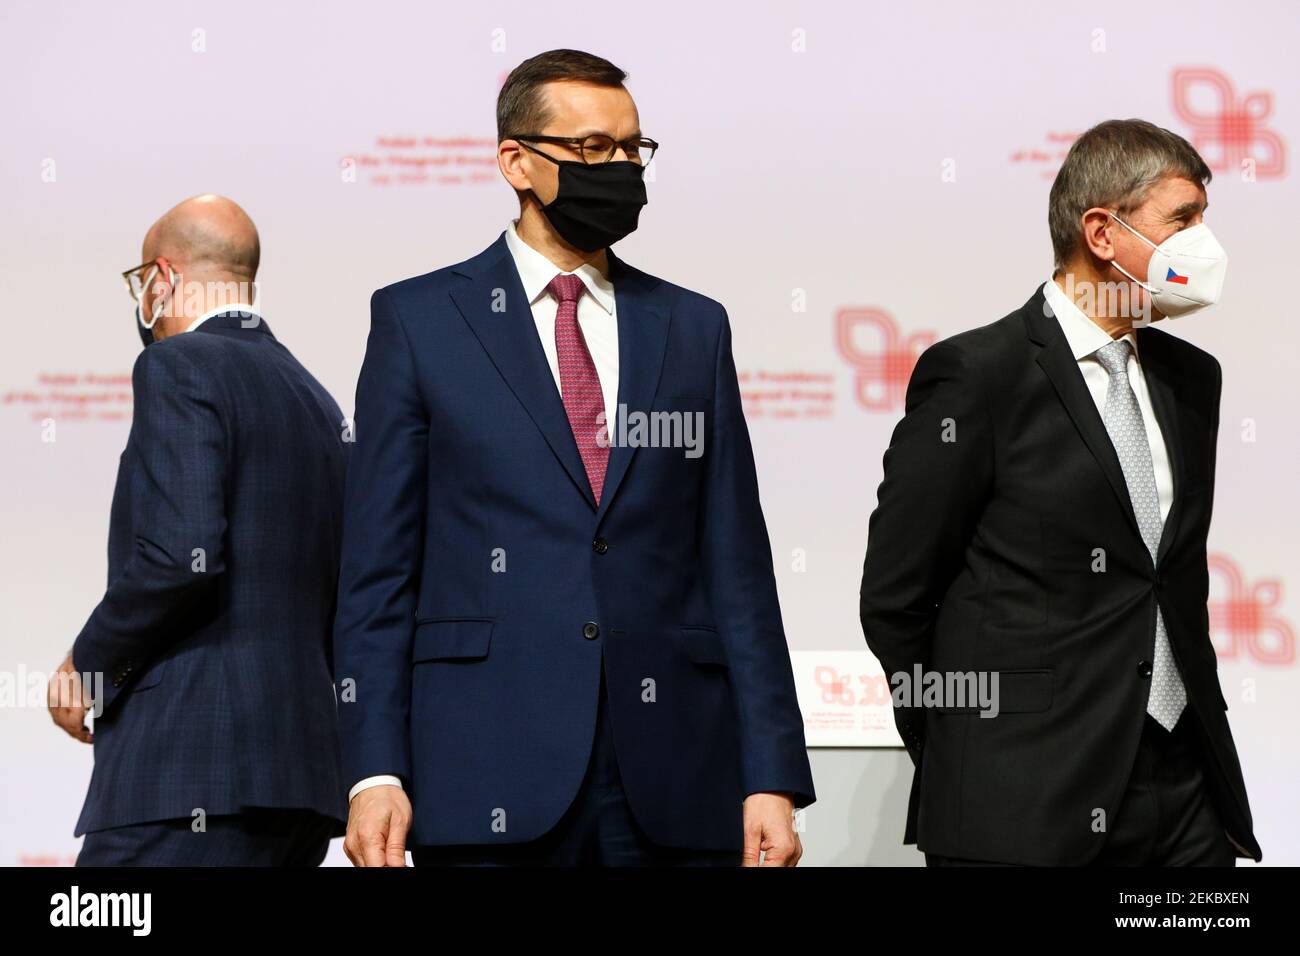 Il primo ministro polacco Mateusz Morawiecki (C) e il primo ministro ceco Andrej Babis (R) sono stati visti durante la conferenza stampa. Vertice dei capi di governo di Foto Stock